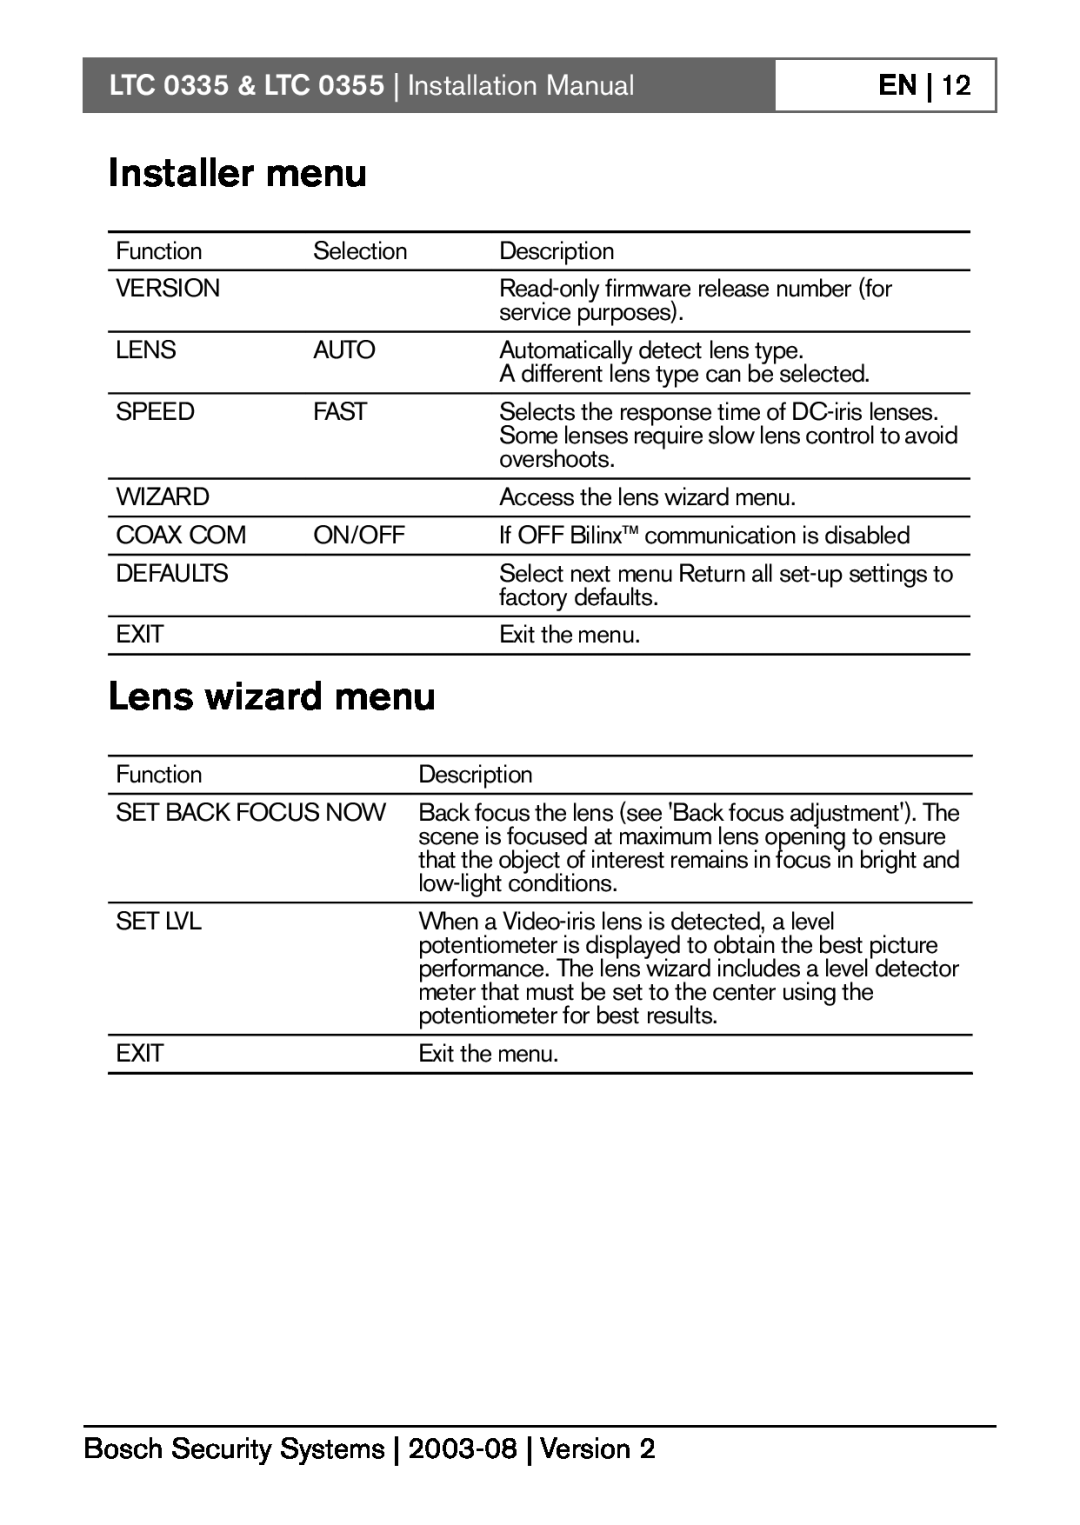 Bosch Appliances installation manual Installer menu, Lens wizard menu, LTC 0335 & LTC 0355 Installation Manual, En 